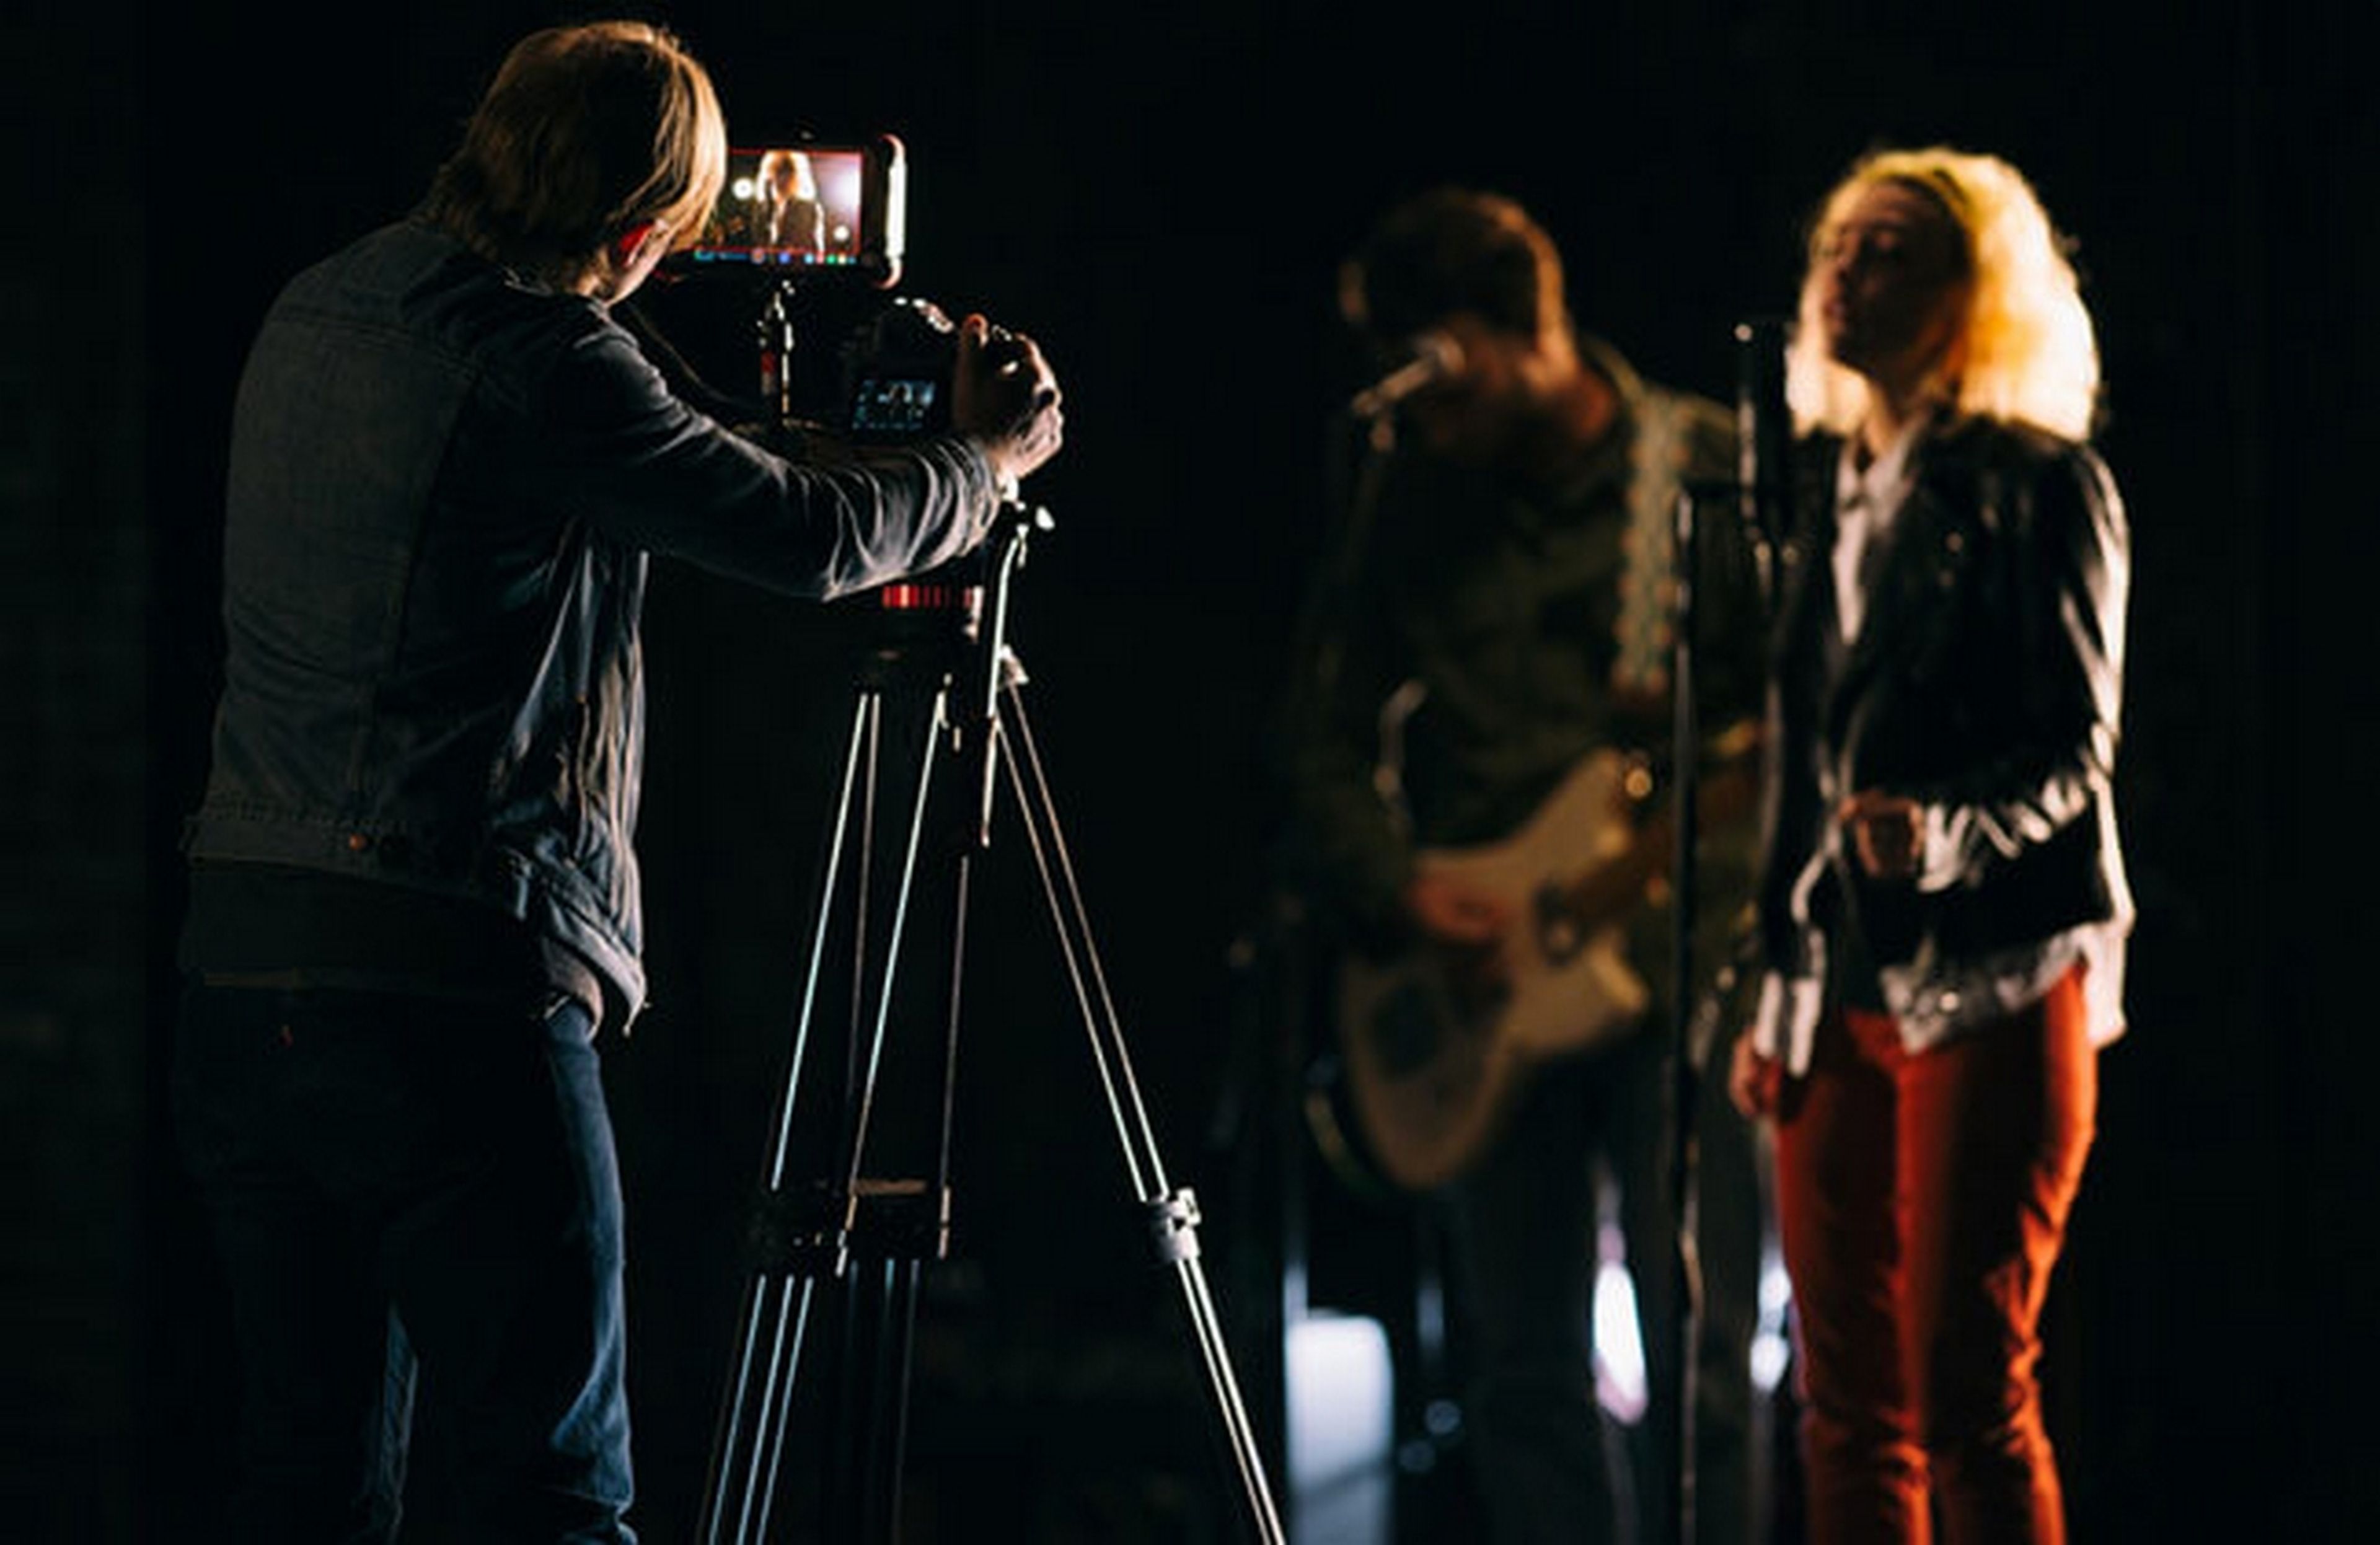 Nikkon regala 10 cursos de fotografía en vídeo durante el mes de abril